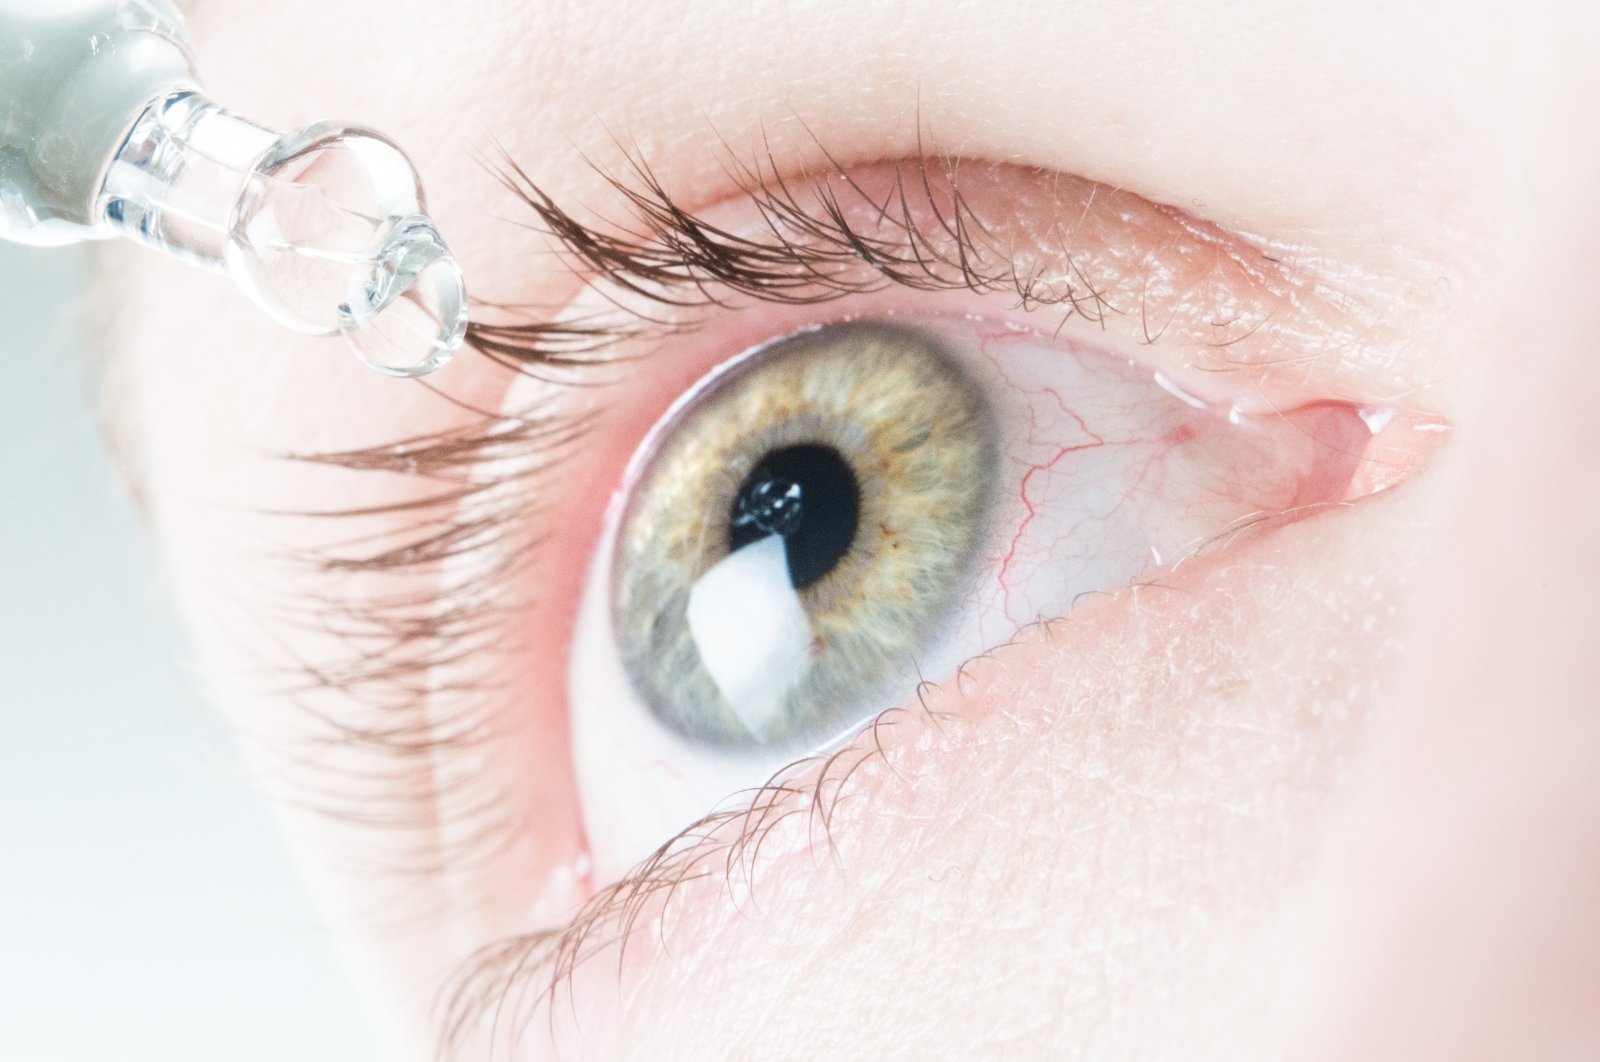 Tidak perlu panik: Pembuluh darah di mata bisa pecah dan tidak berbahaya